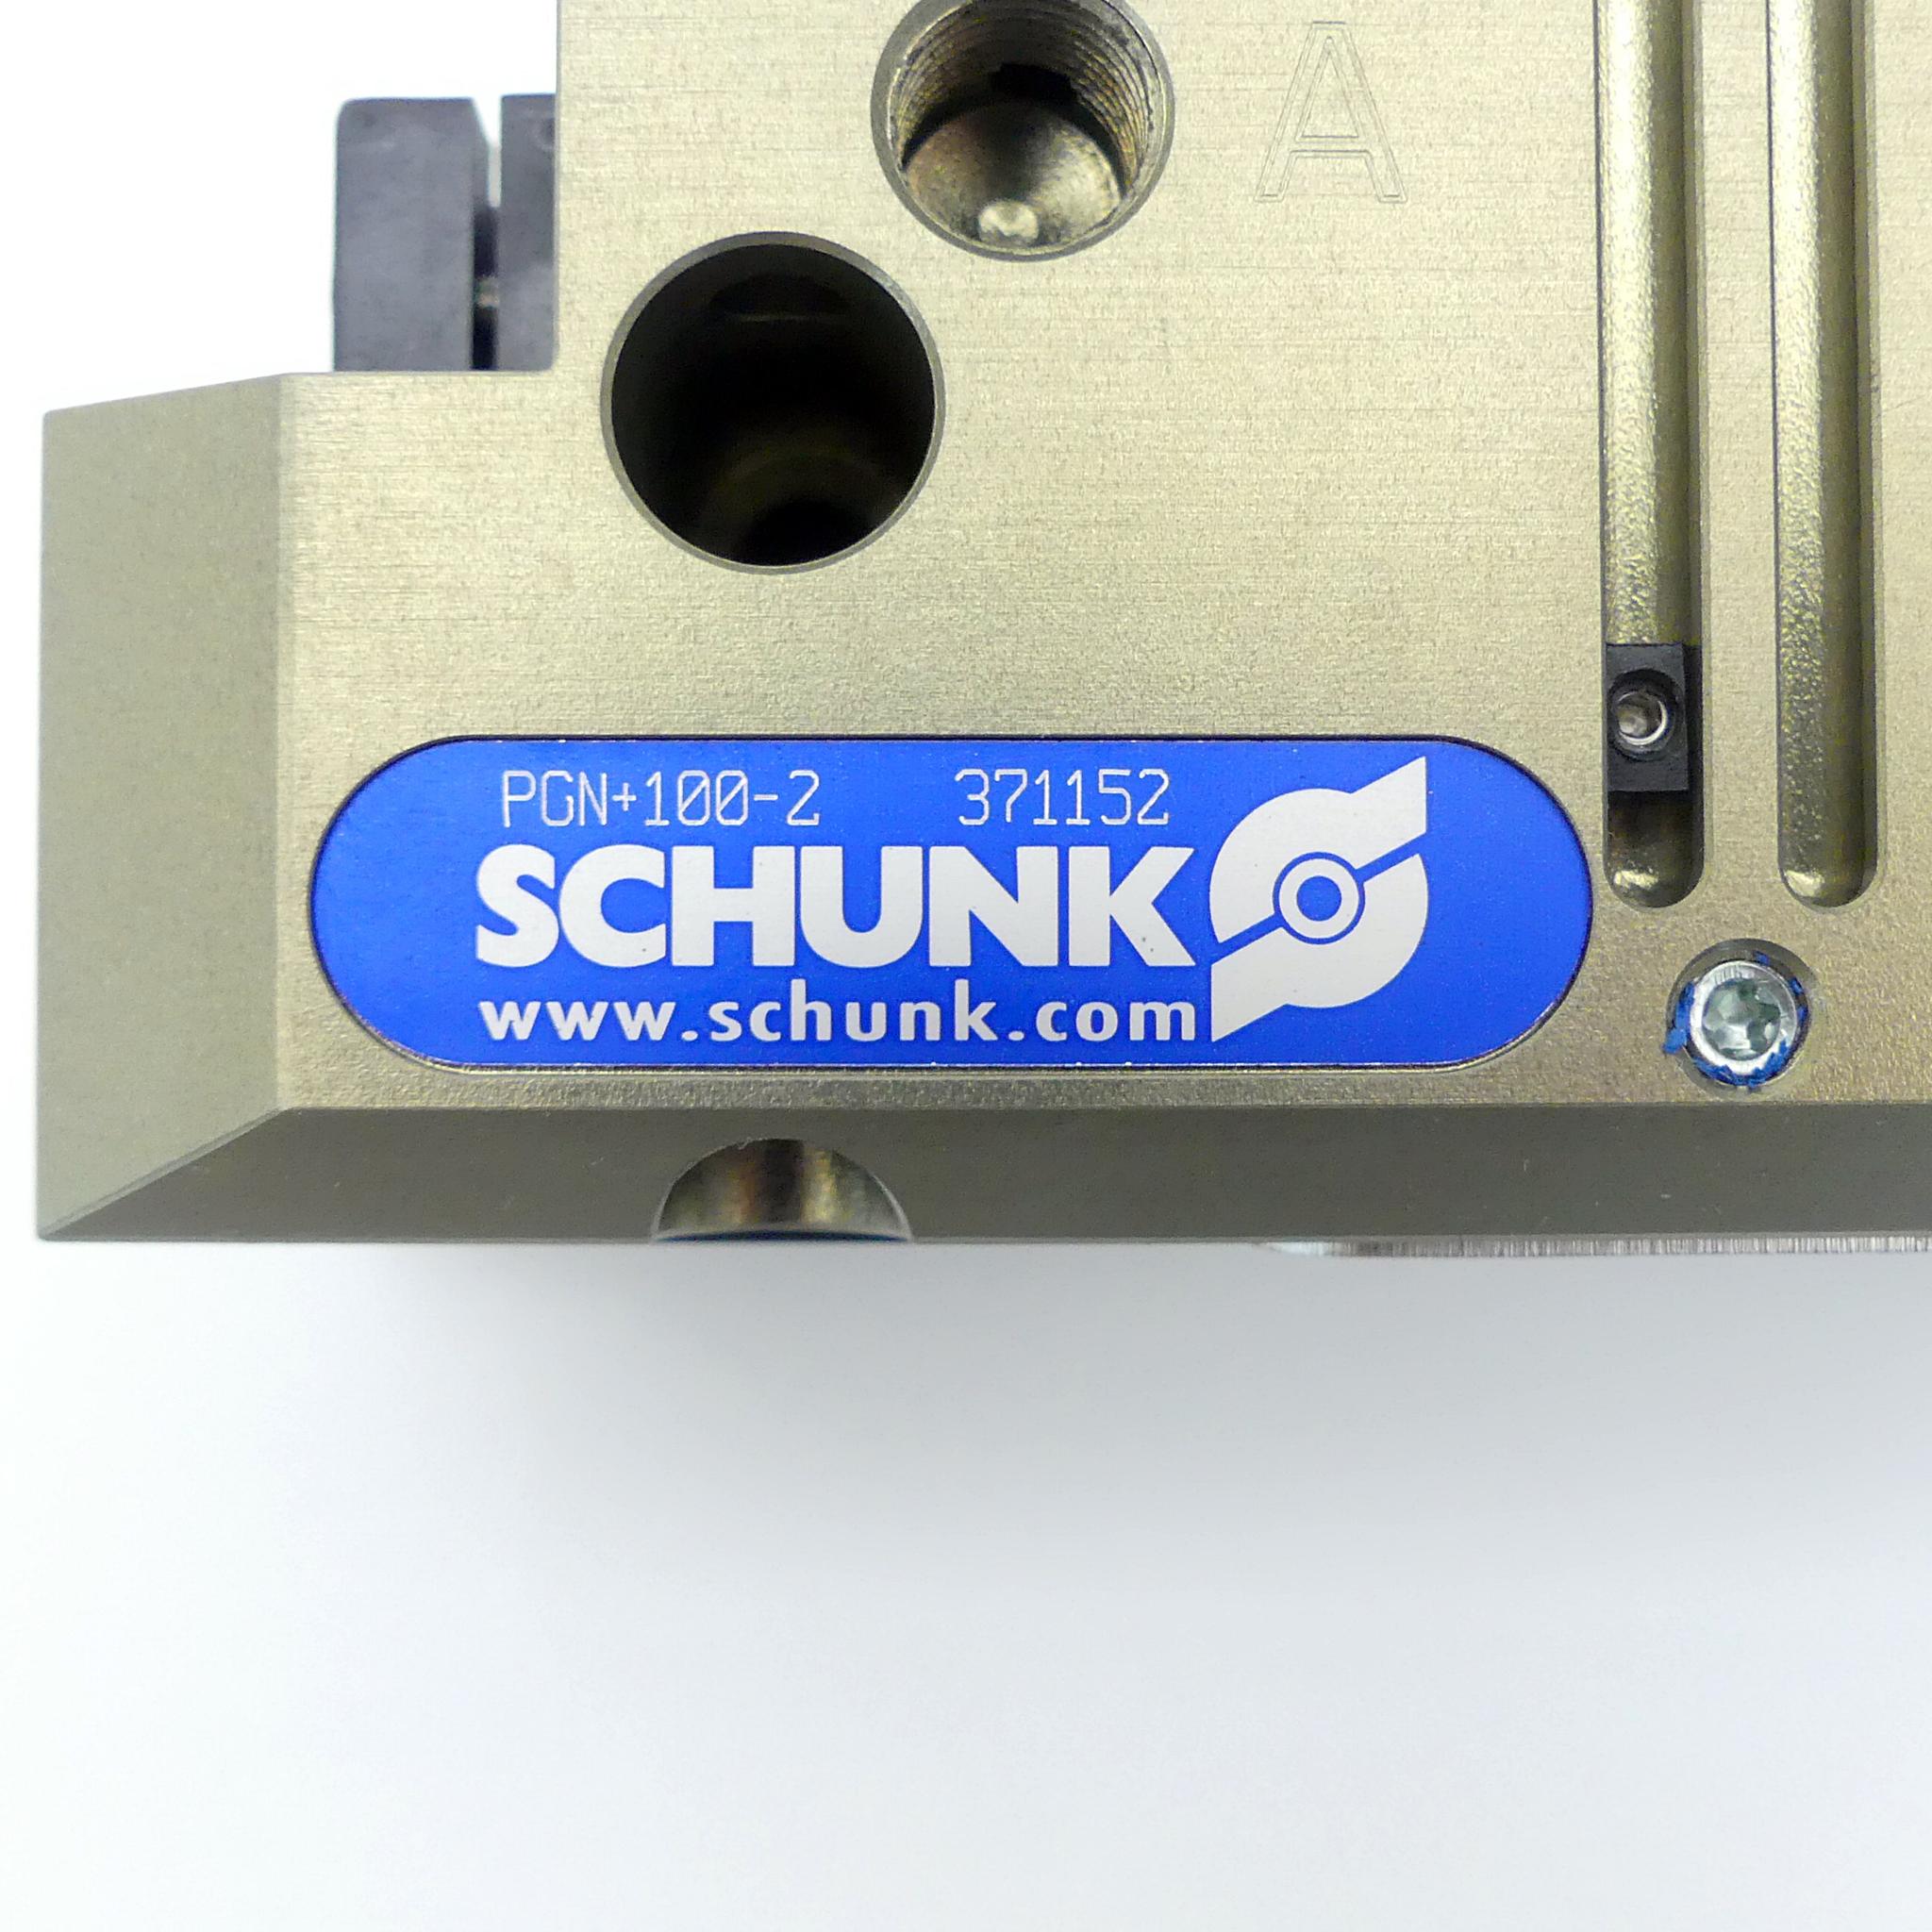 Produktfoto 2 von SCHUNK Parallelgreifer pneumatisch PGN+ 100-2